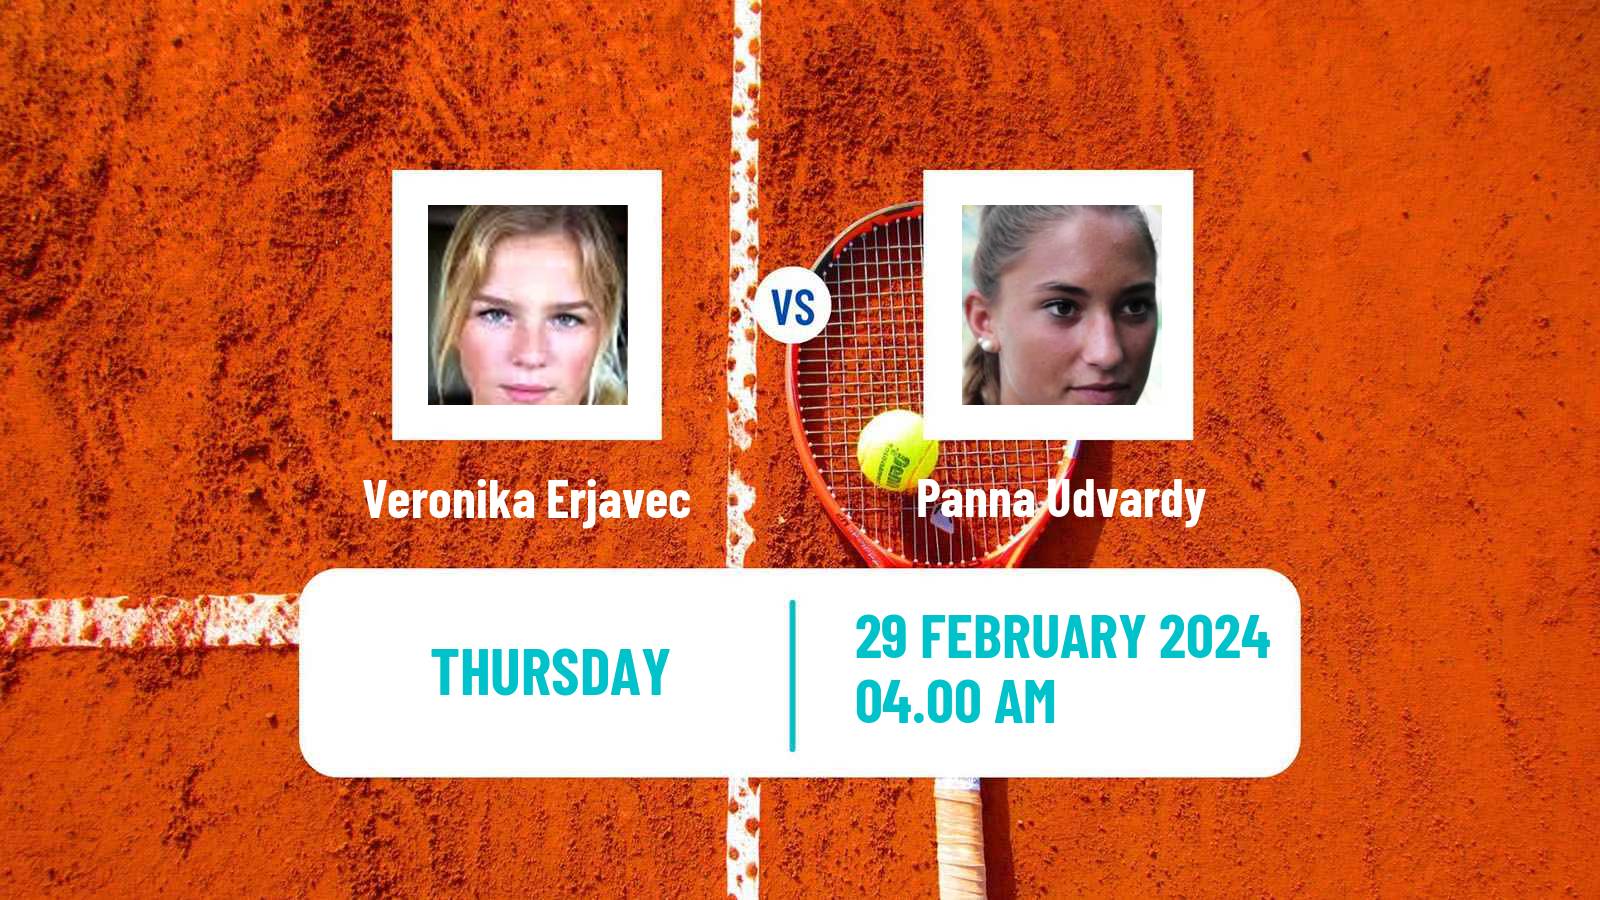 Tennis ITF W50 Trnava Women Veronika Erjavec - Panna Udvardy